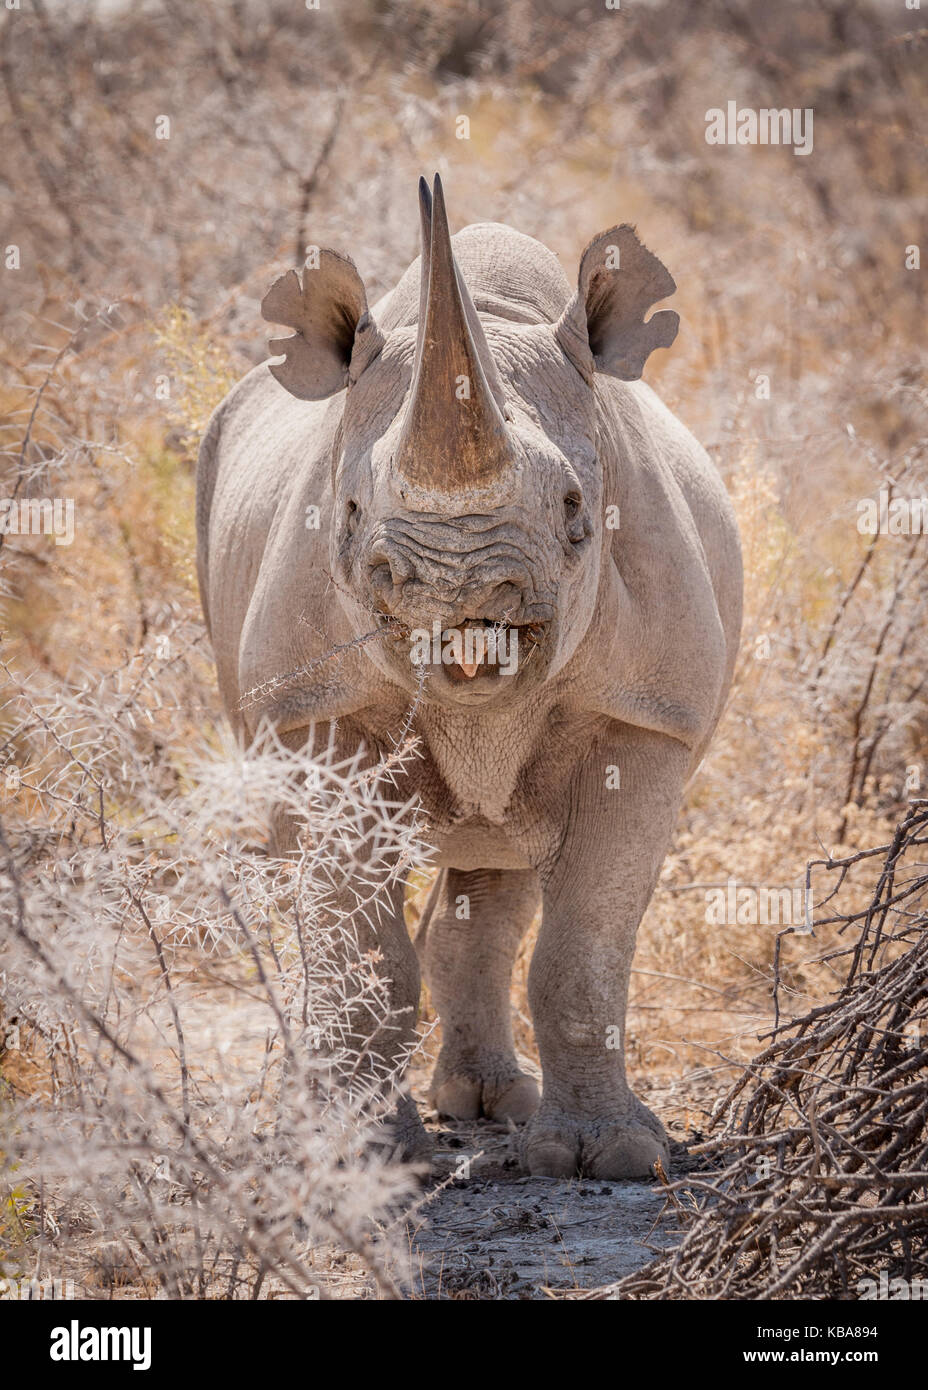 Black rhinoceros eating browse, Etosha National Park, Namibia Stock Photo